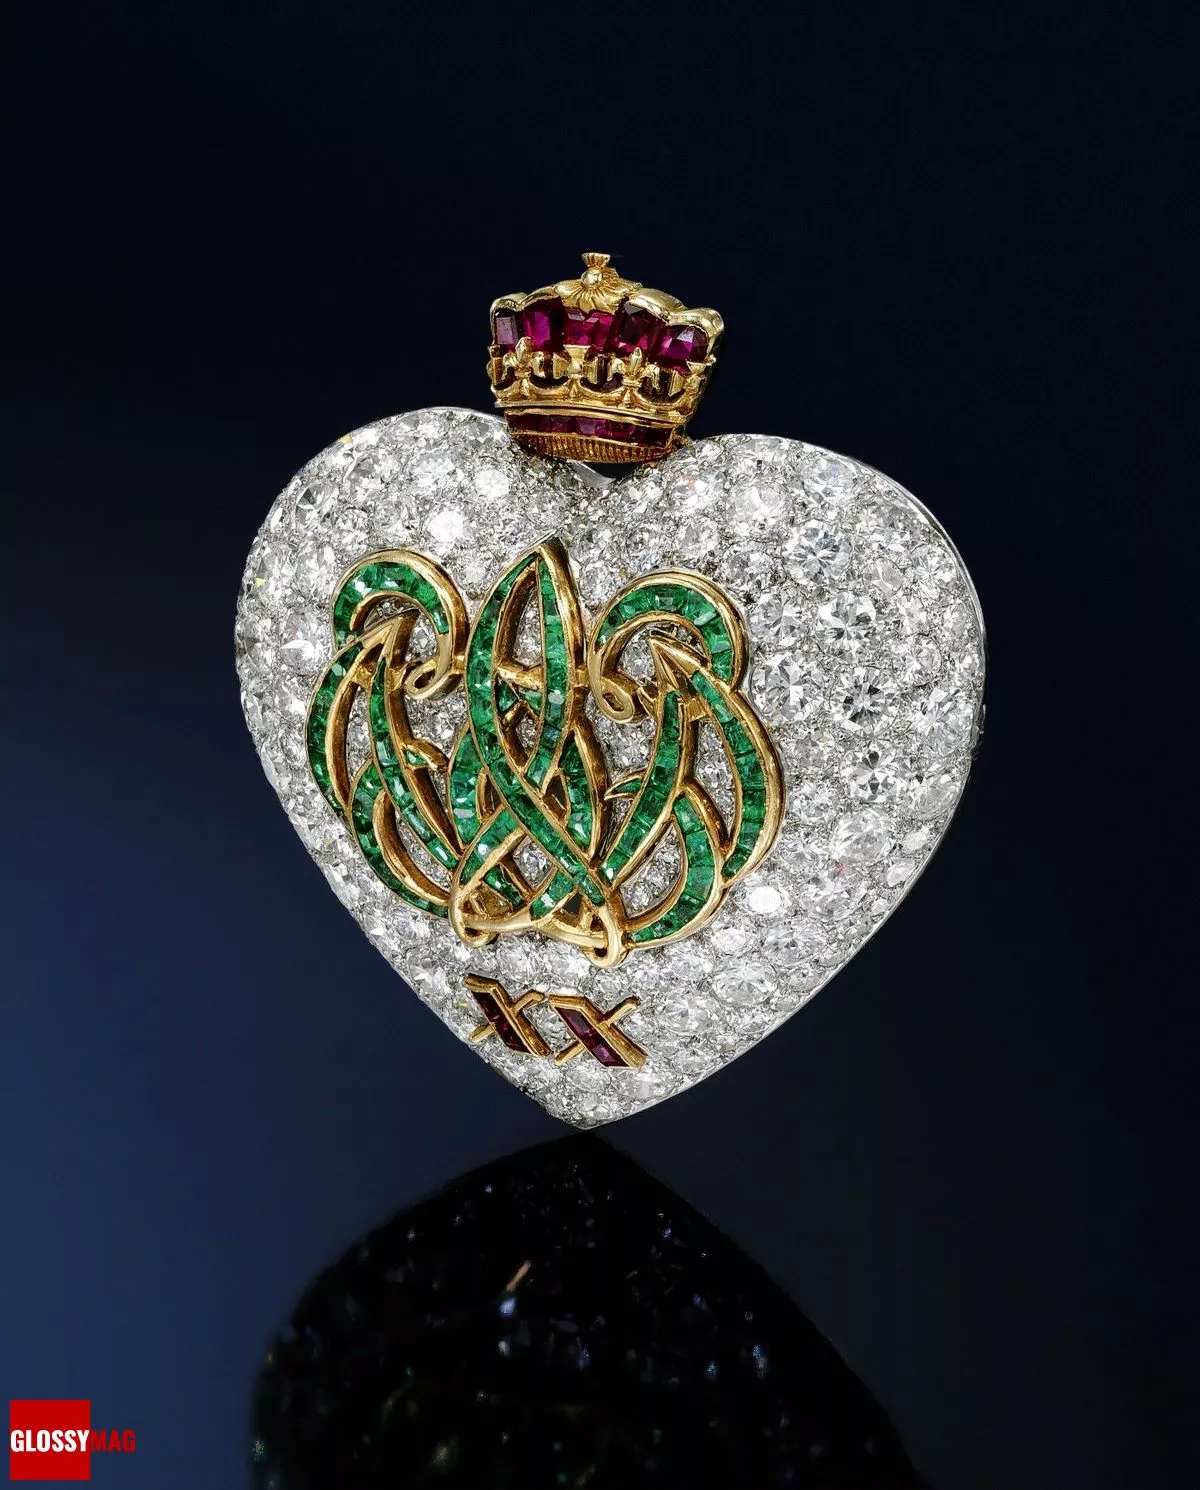 История броши Cartier герцогини Виндзорской в виде сердца с инициалами «W.E.», фото 1